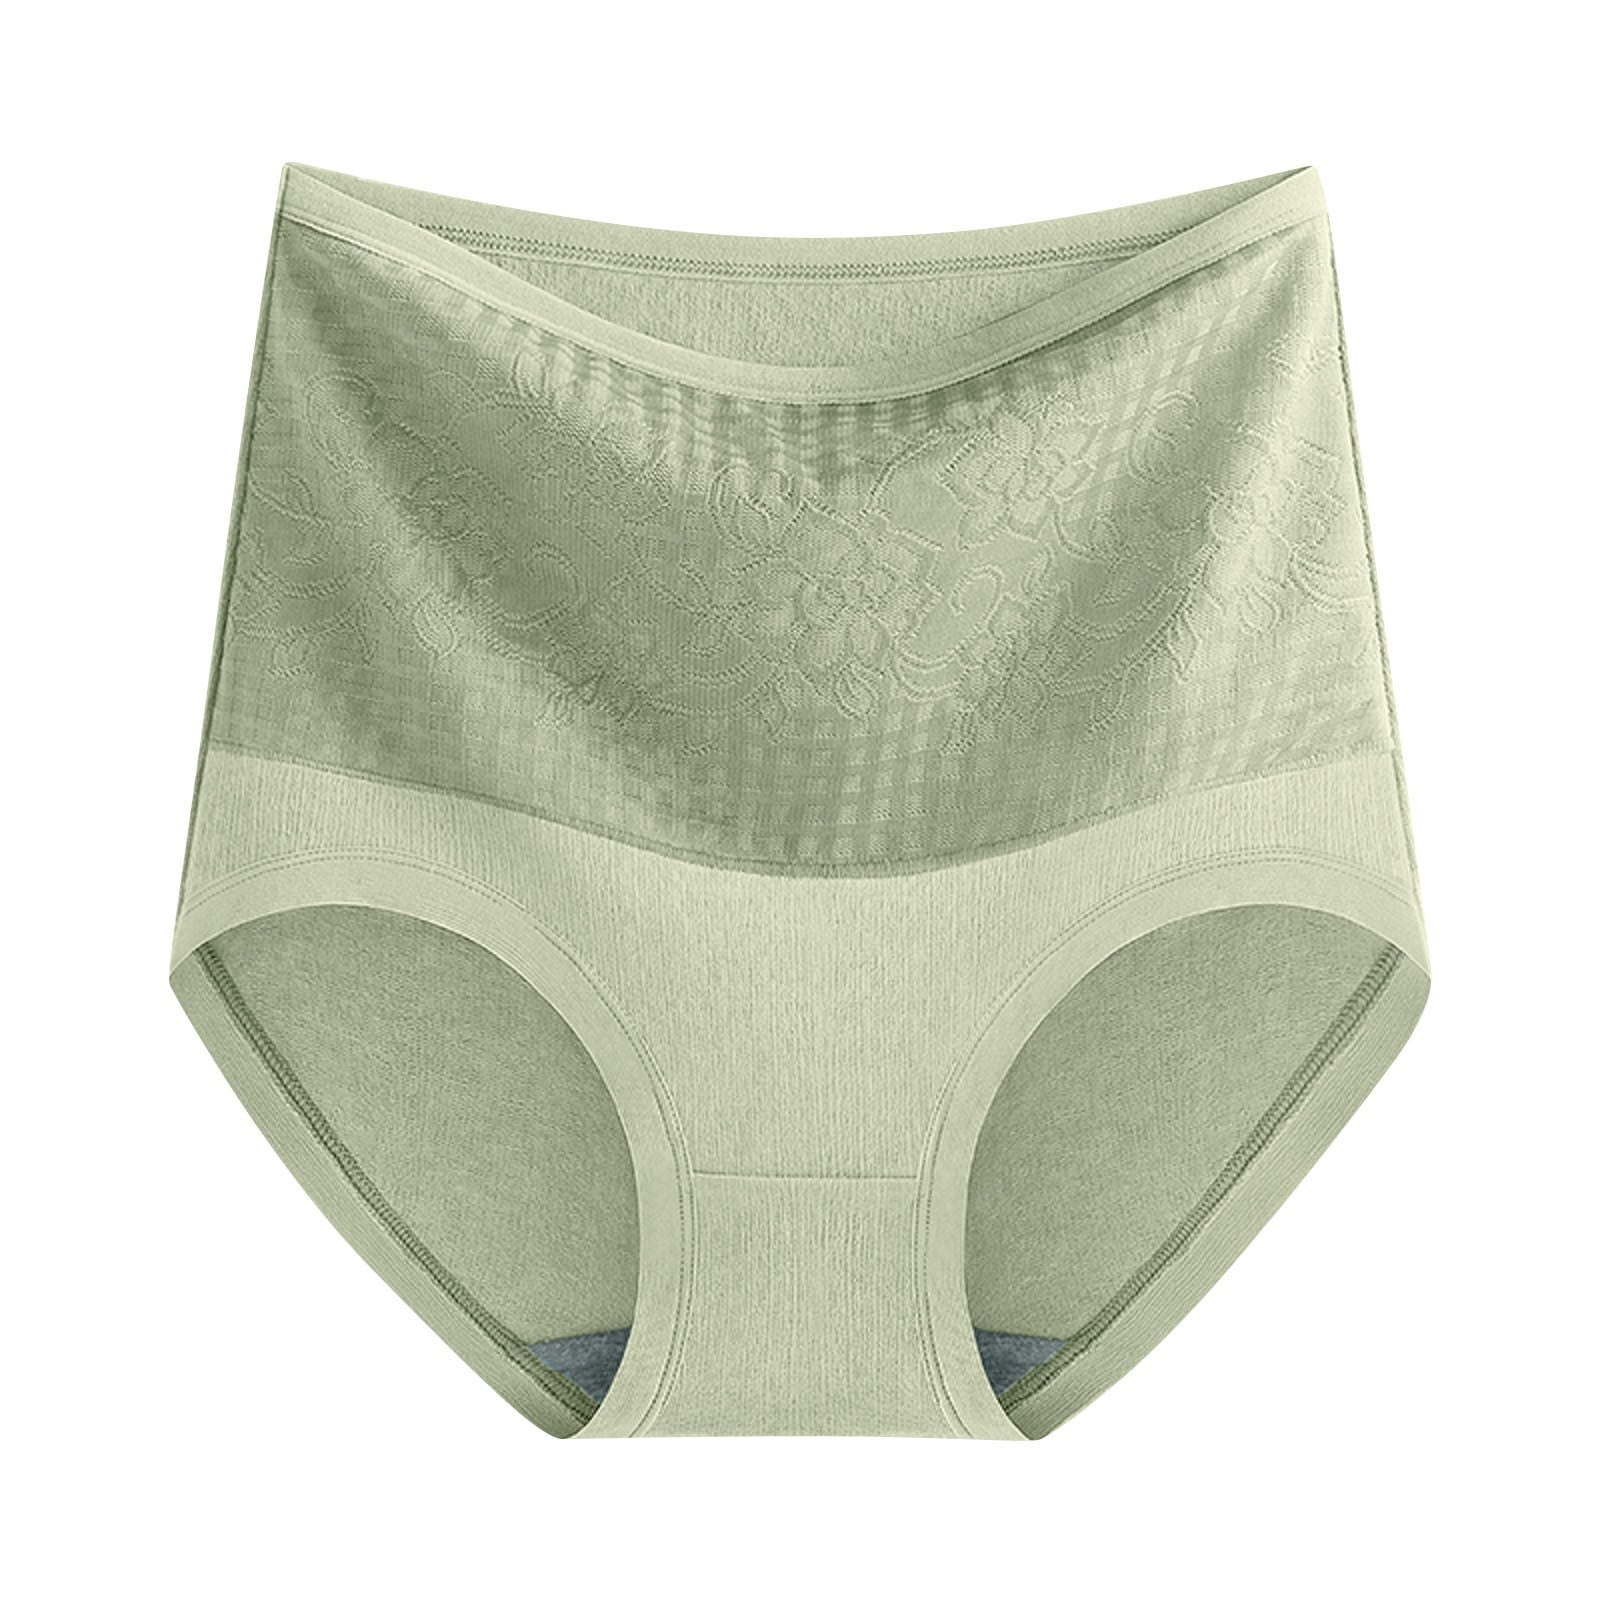 Aayomet Women Underwear Thongs Season High Waist Shapewear Short Pants  Women Slimming Women Underwear (Green, One Size) 